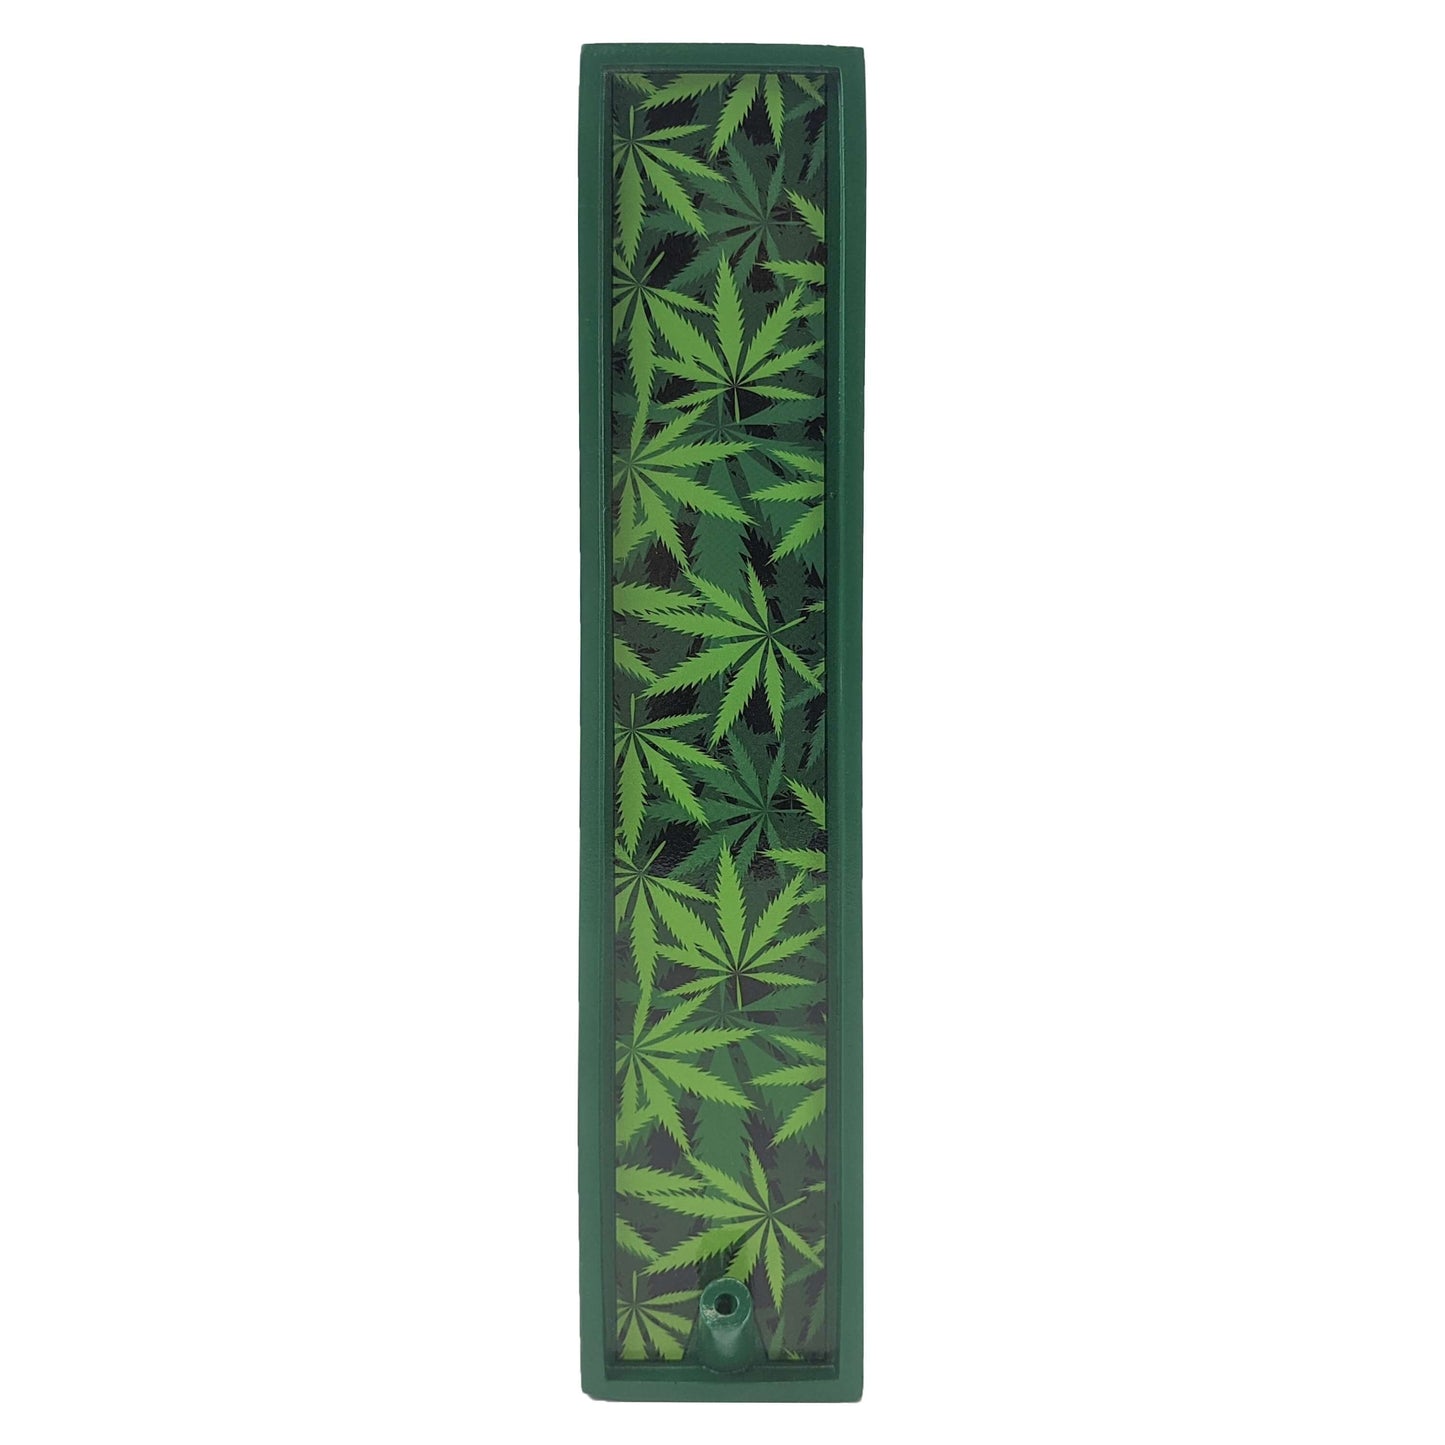 Novelty Poly Stone Incense Burner & Ash Catcher, Just Green Leaf Pattern